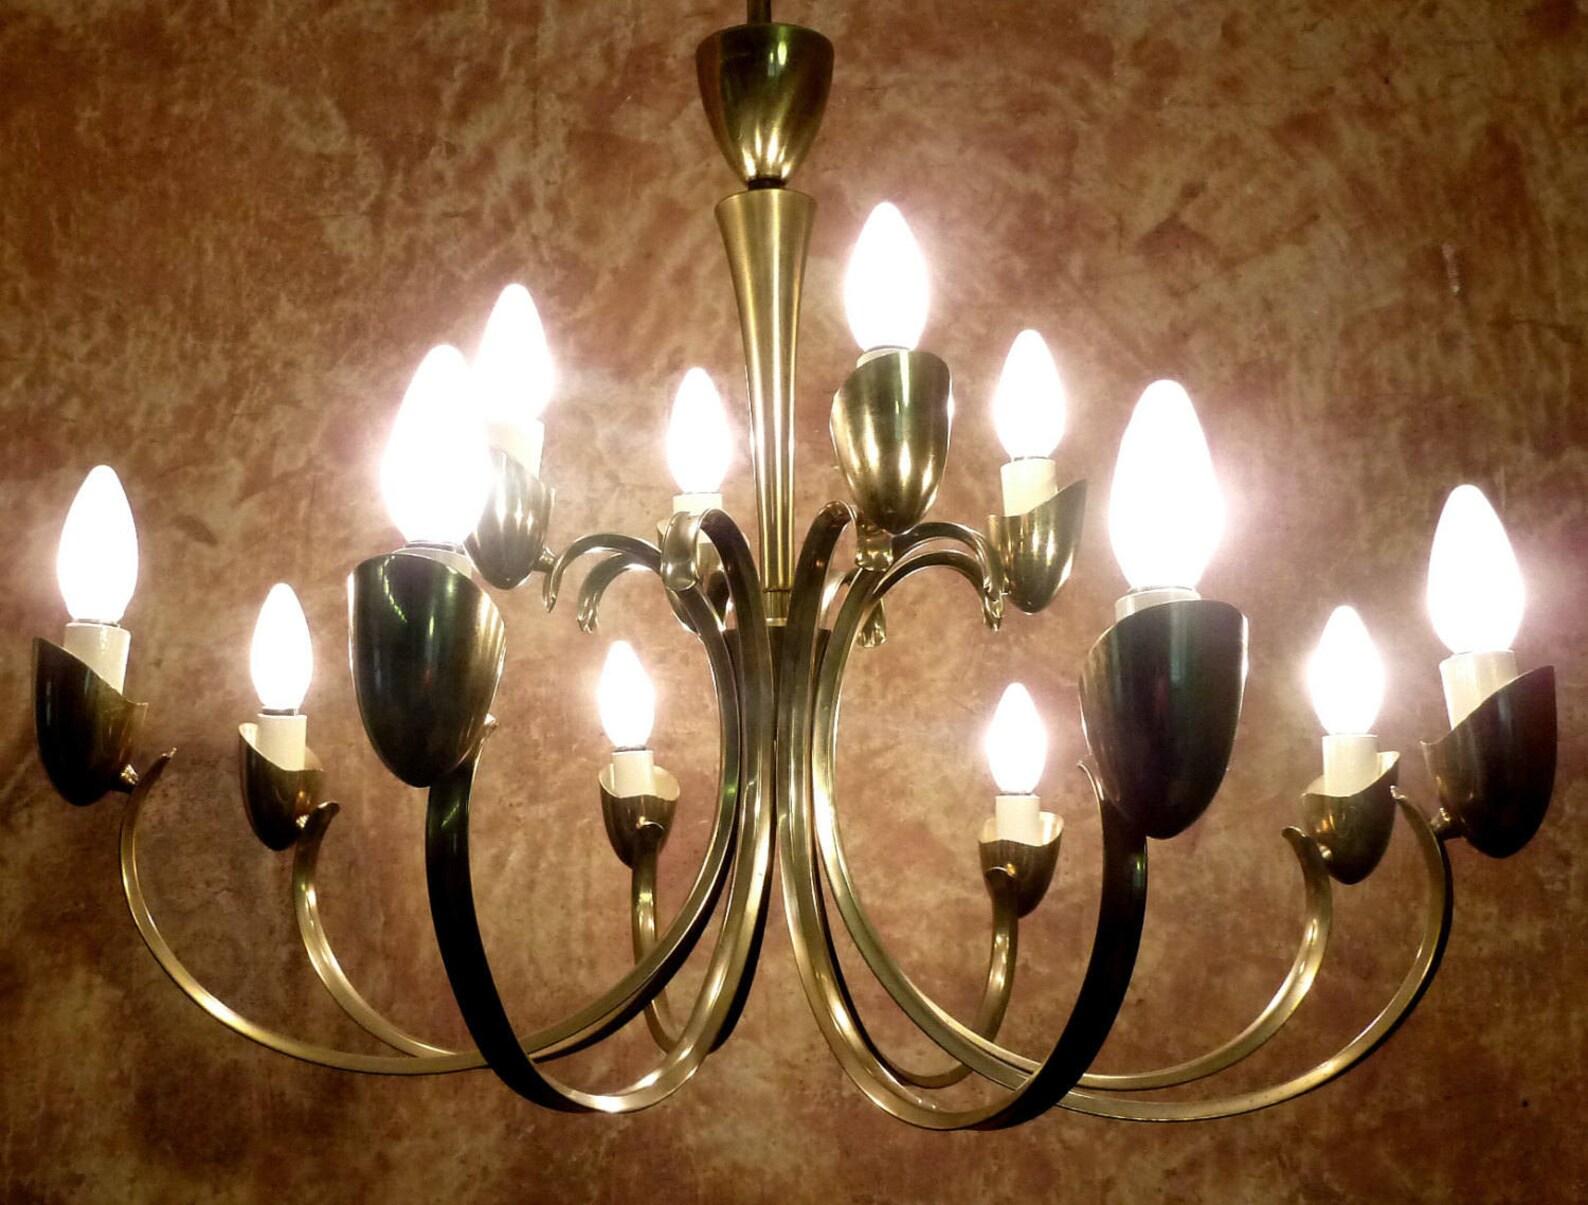 12 Lichter großer italienischer Palastkronleuchter - 1956- Stilnovo

Poliertes Messing & mattierte Perlglasblüten
Maße: Durchmesser 29